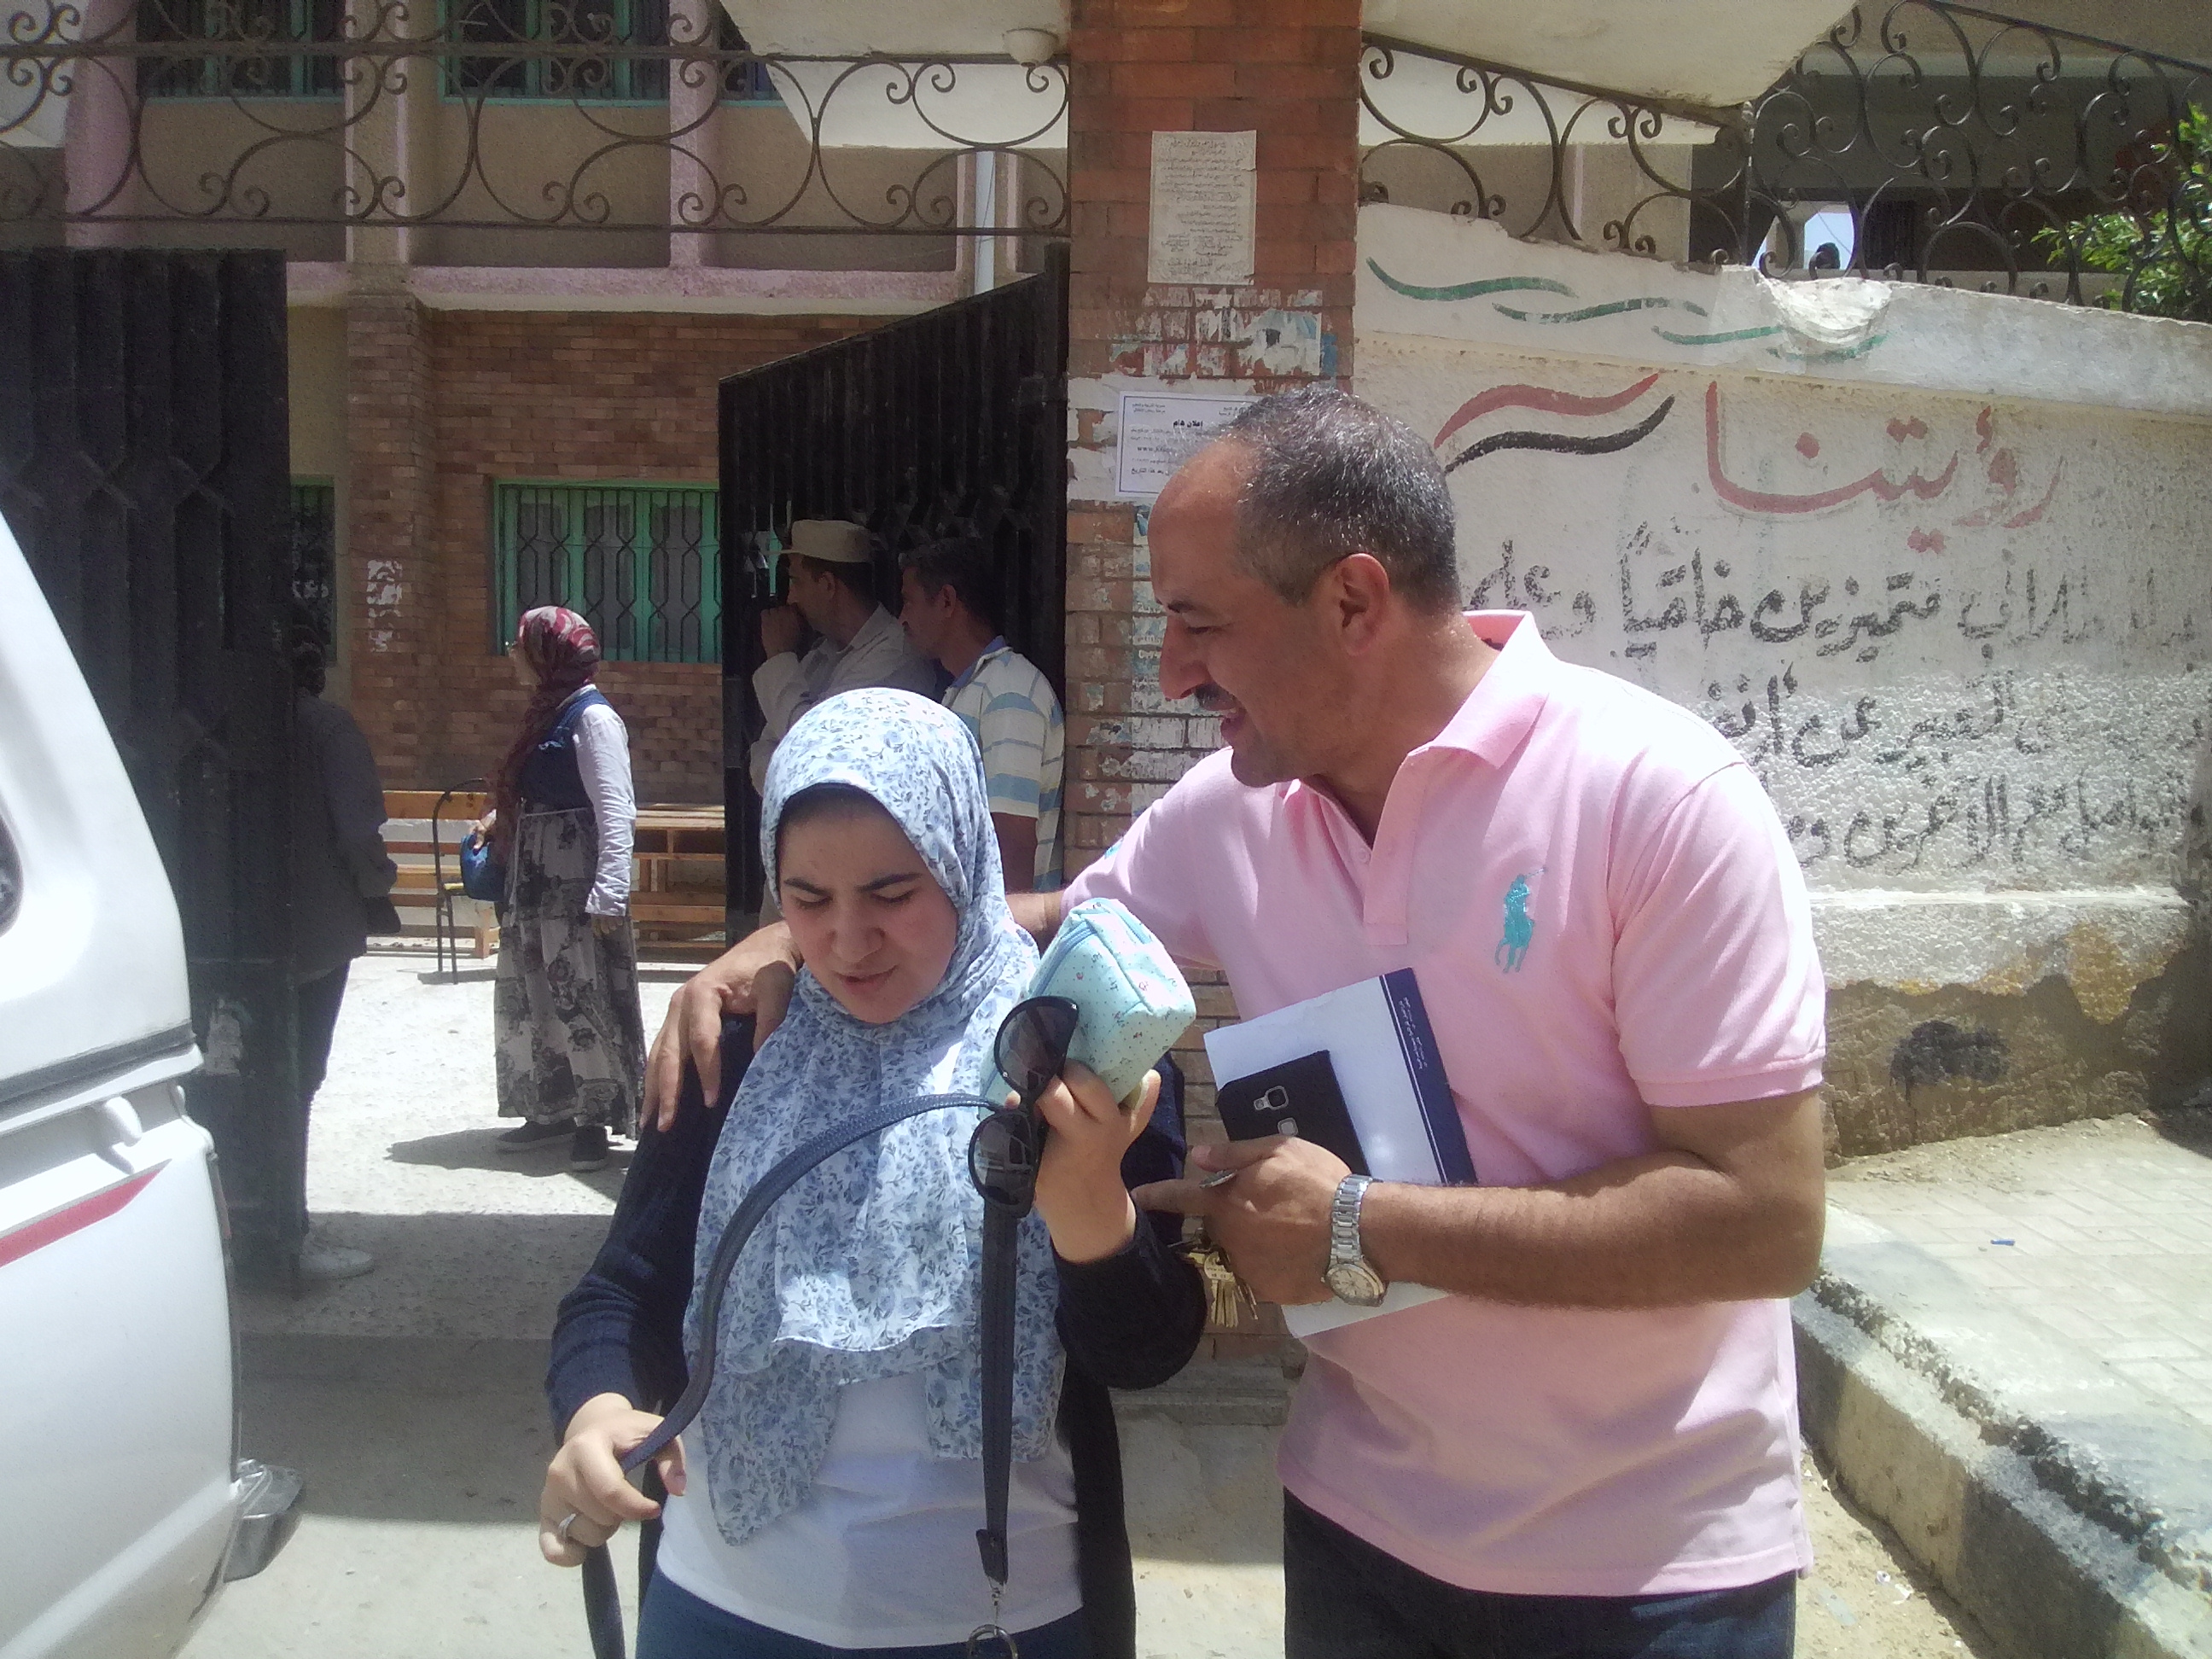 طالبة يحتضنها والدها عقب خروجها من الامتحان